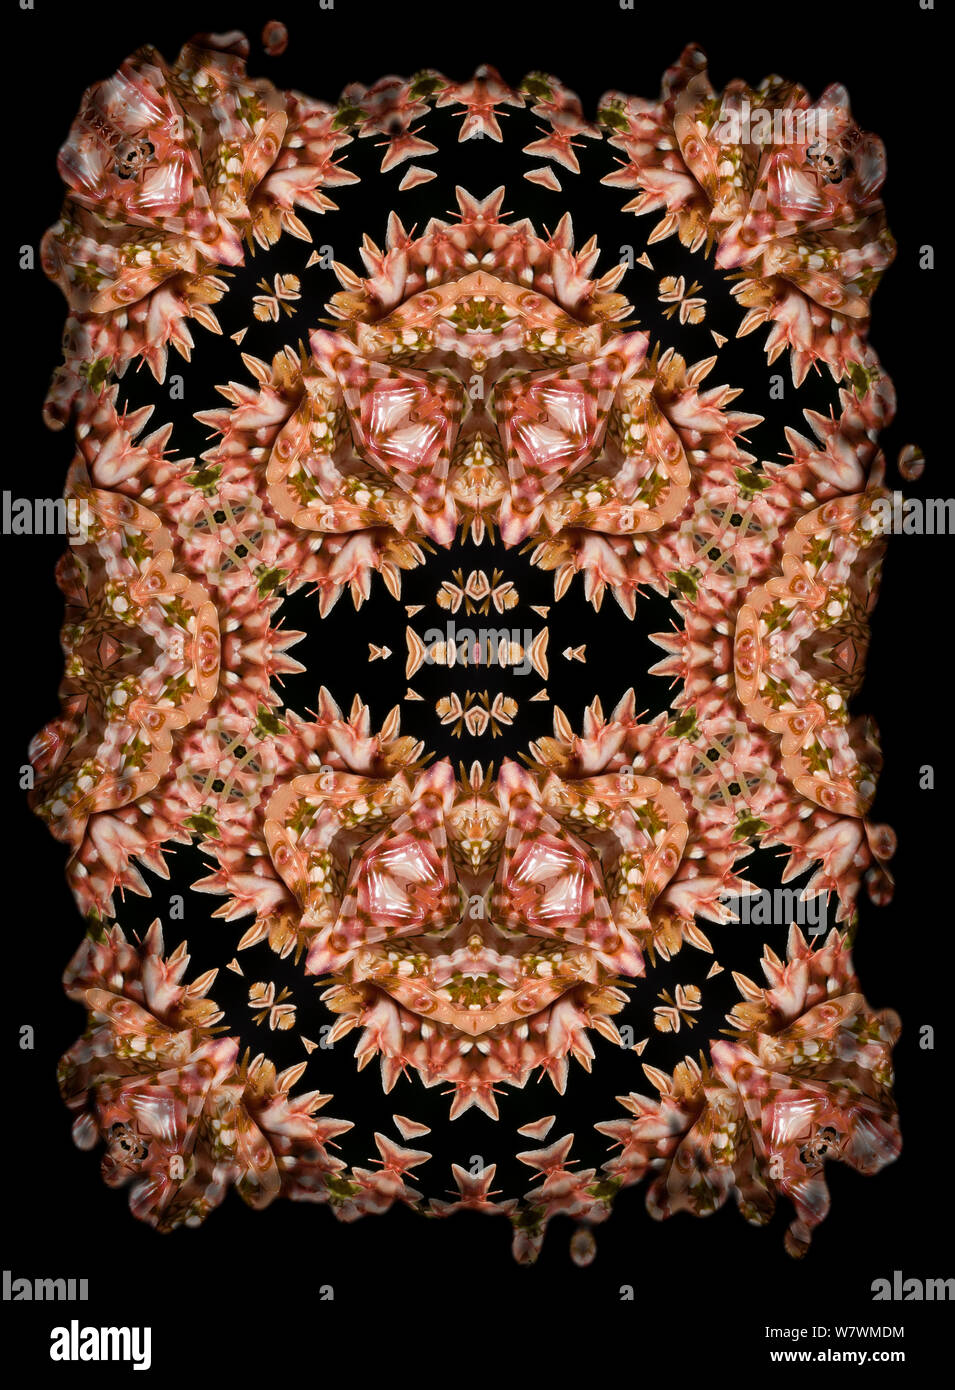 Calidoscopio patrón formado a partir de la imagen de la flor Espinosa (Pseudocreobotra wahlbergii Mantis), rosa. Restringido para uso editorial hasta diciembre de 2015 Foto de stock